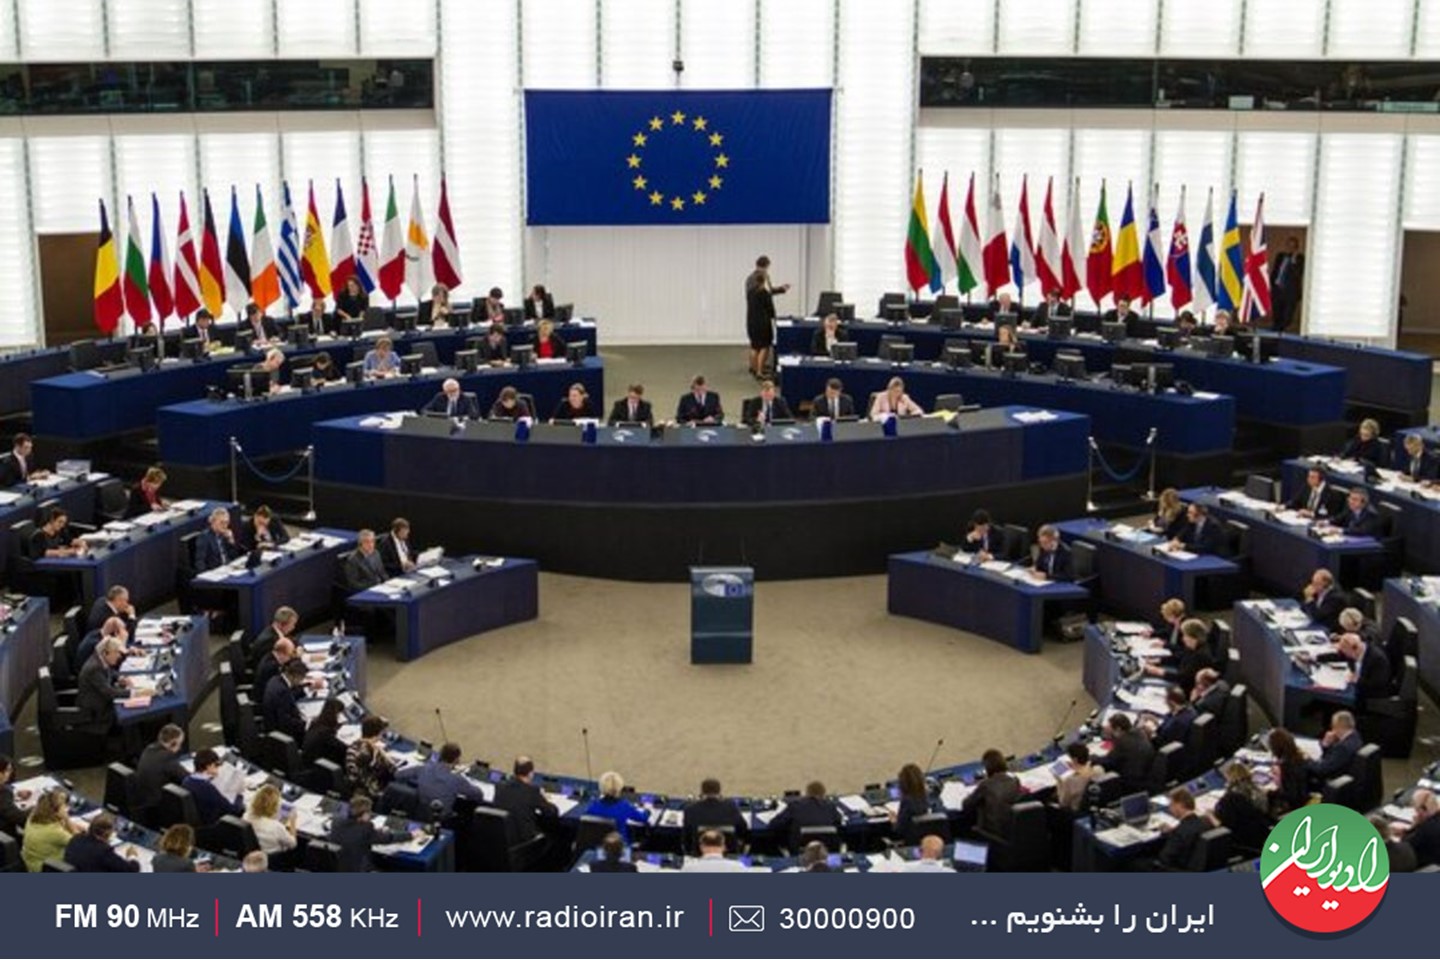 بررسی خبط پارلمان اروپا علیه یکی از قدرت های نظامی ایران